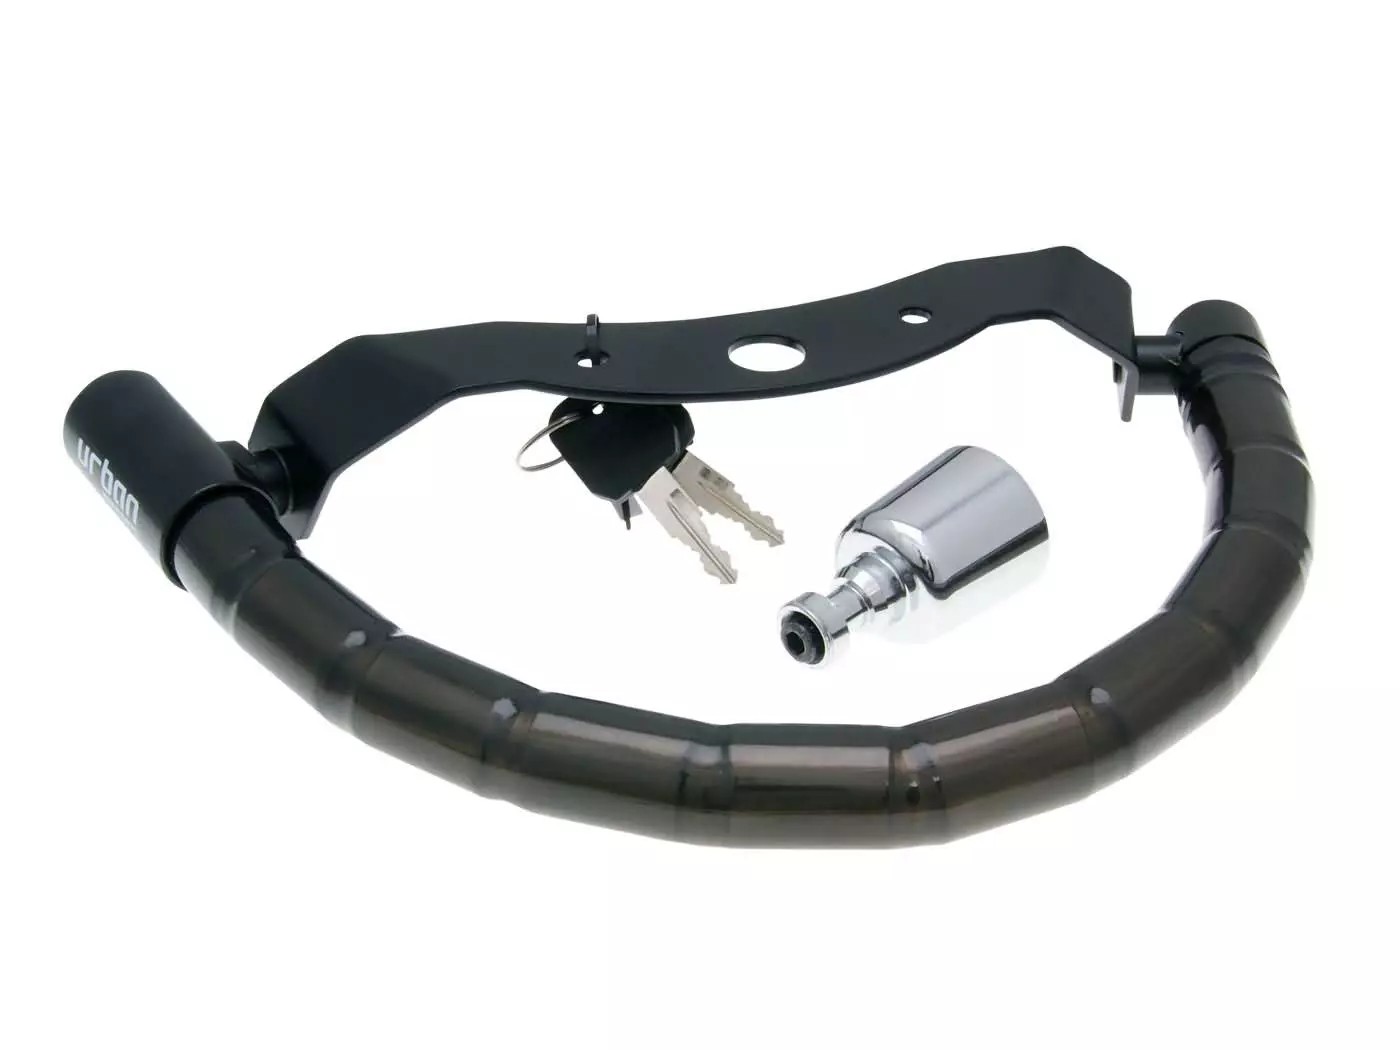 Dual Function Lock Scooter / Helmet Urban Security Practic For Daelim Steezer 125 S